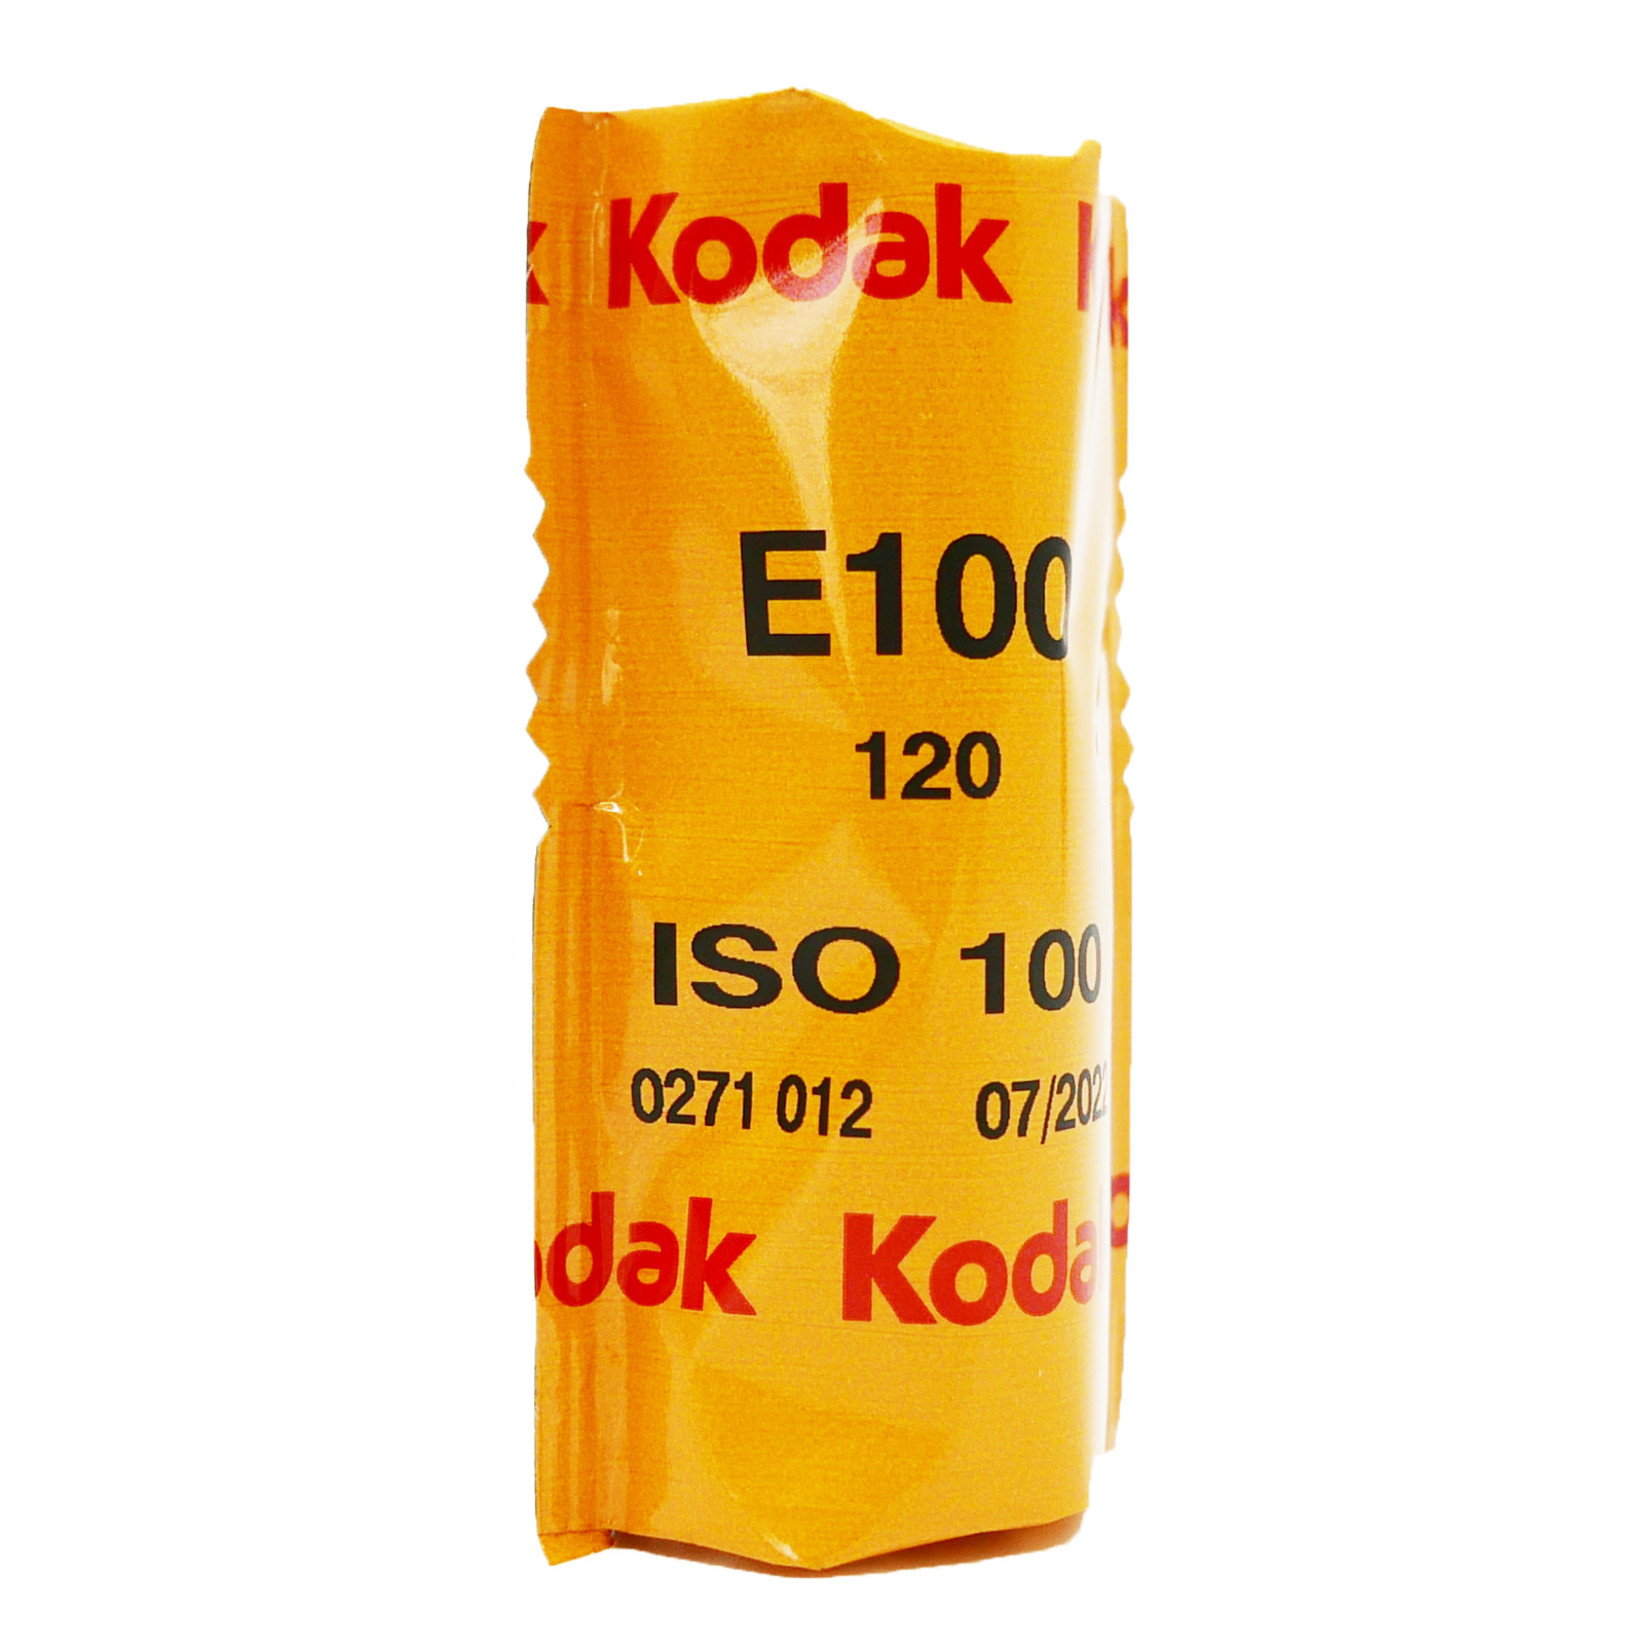 Kodak Kodak Ektachrome E100 120